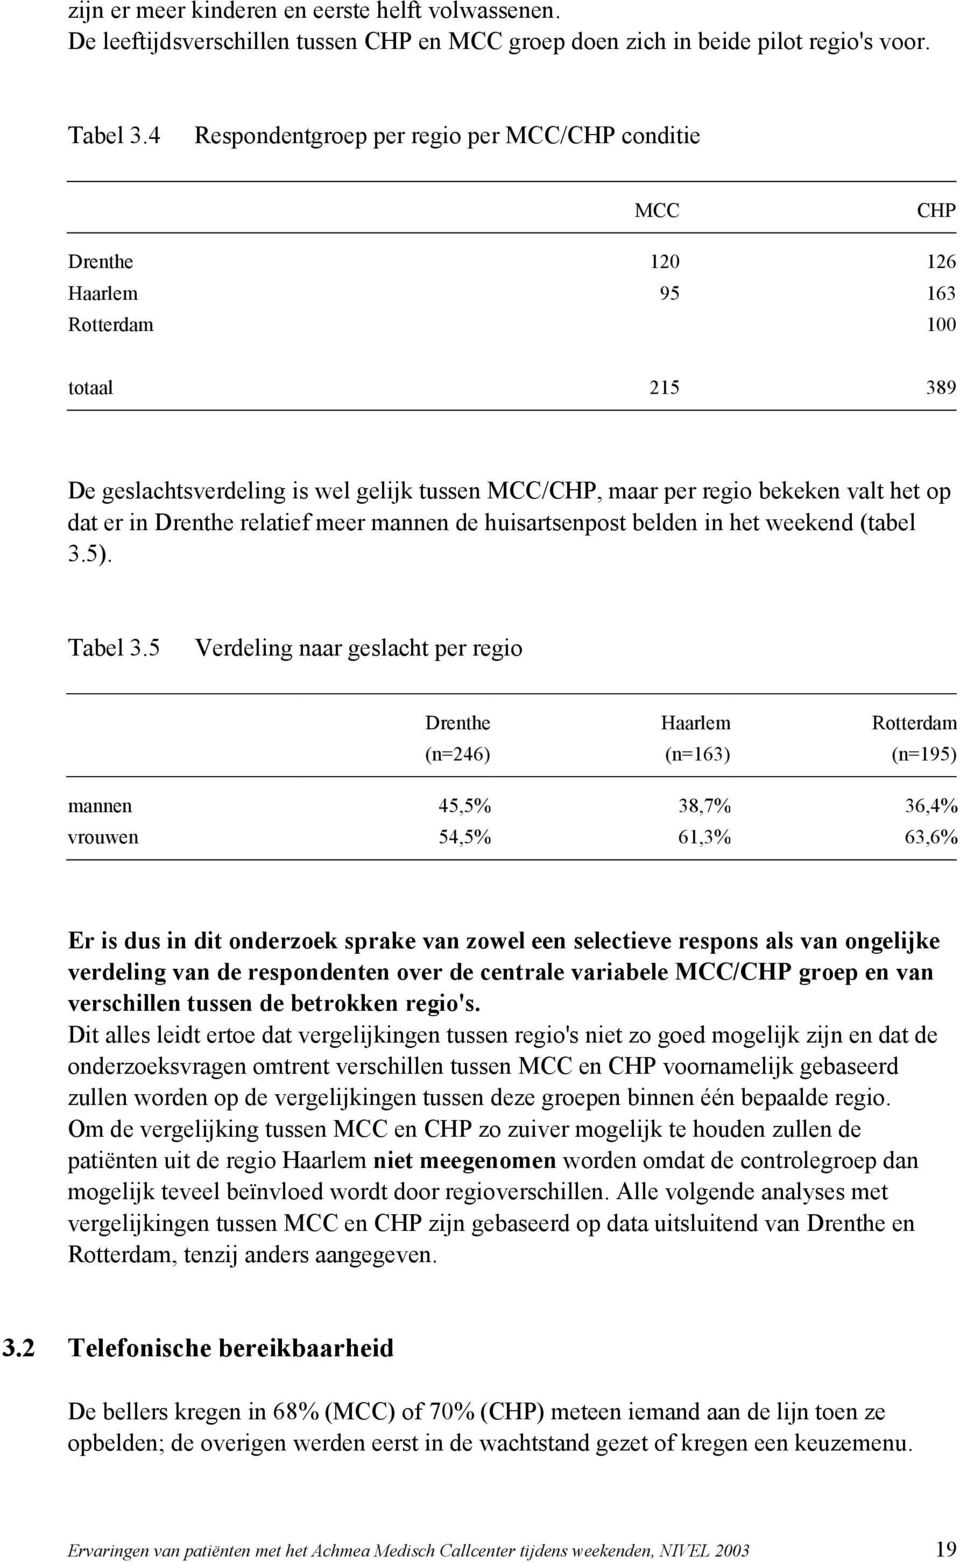 het op dat er in Drenthe relatief meer mannen de huisartsenpost belden in het weekend (tabel 3.5). Tabel 3.